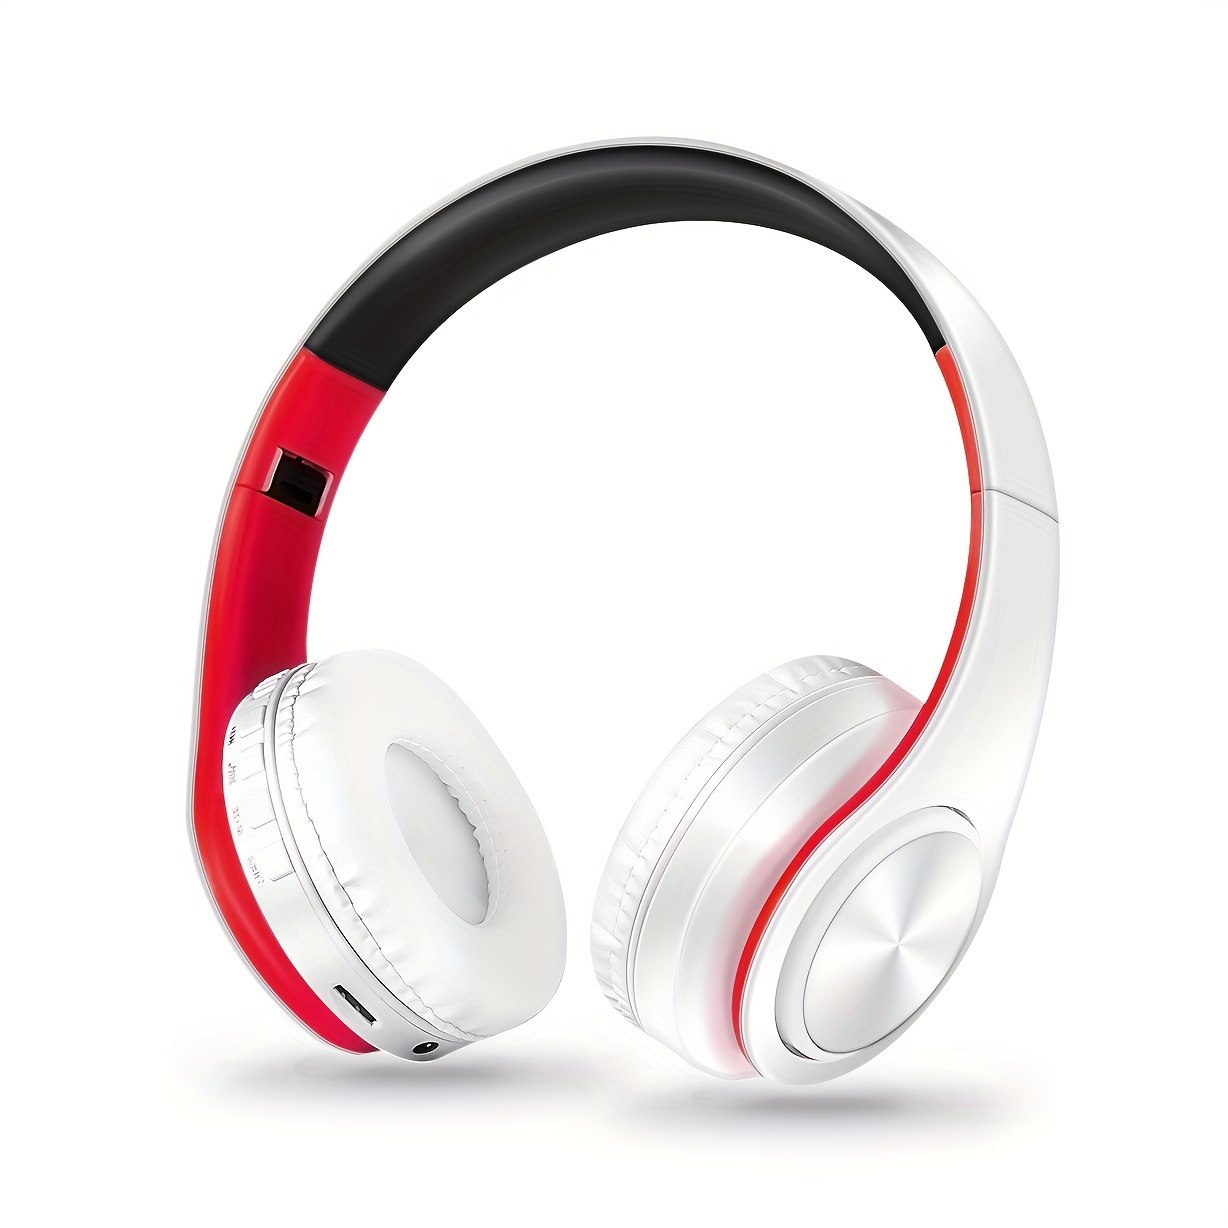 HOCO-Fone De Ouvido Bluetooth Sem Fio Dobrável, Jogo, Música, Headset  Esportivo, Suporte TF Card, AUX, Fone De Ouvido para Android, IOS Celular -  AliExpress